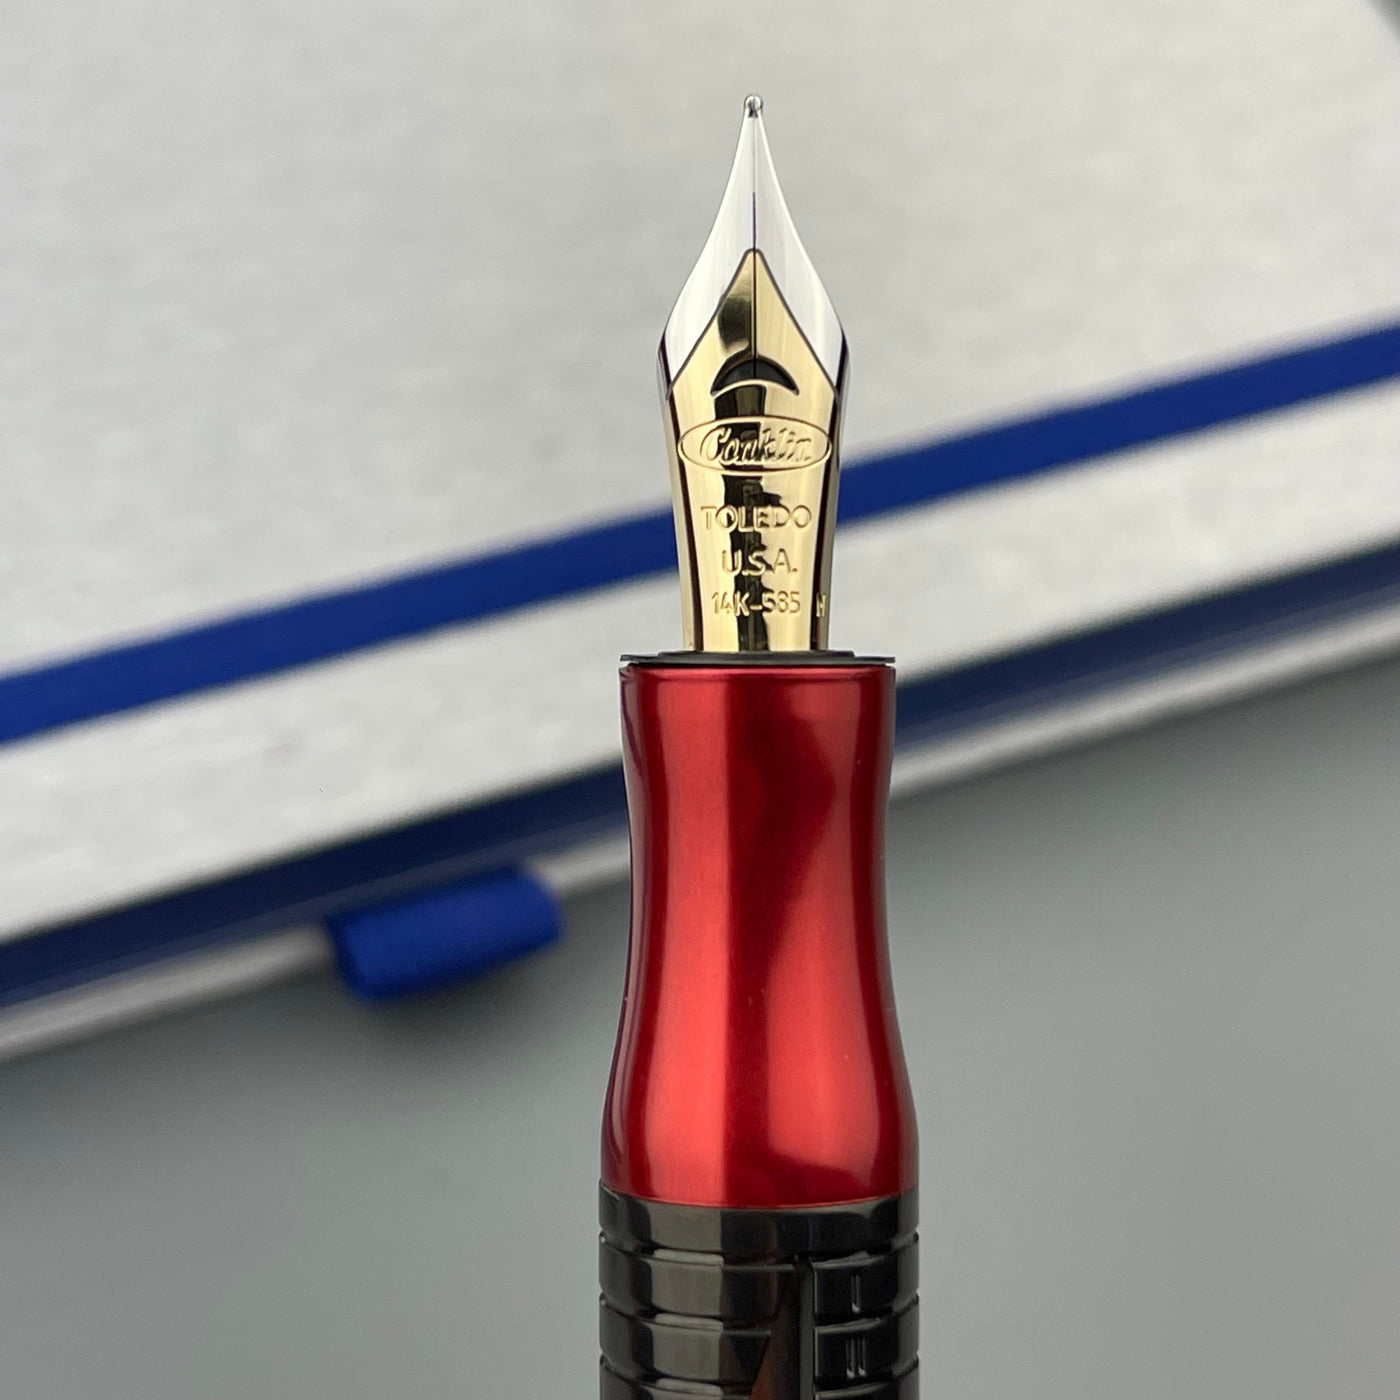 Conklin Nozac Classic 125 Anniversary Fountain Pen - Red / Black (Limited Edition)